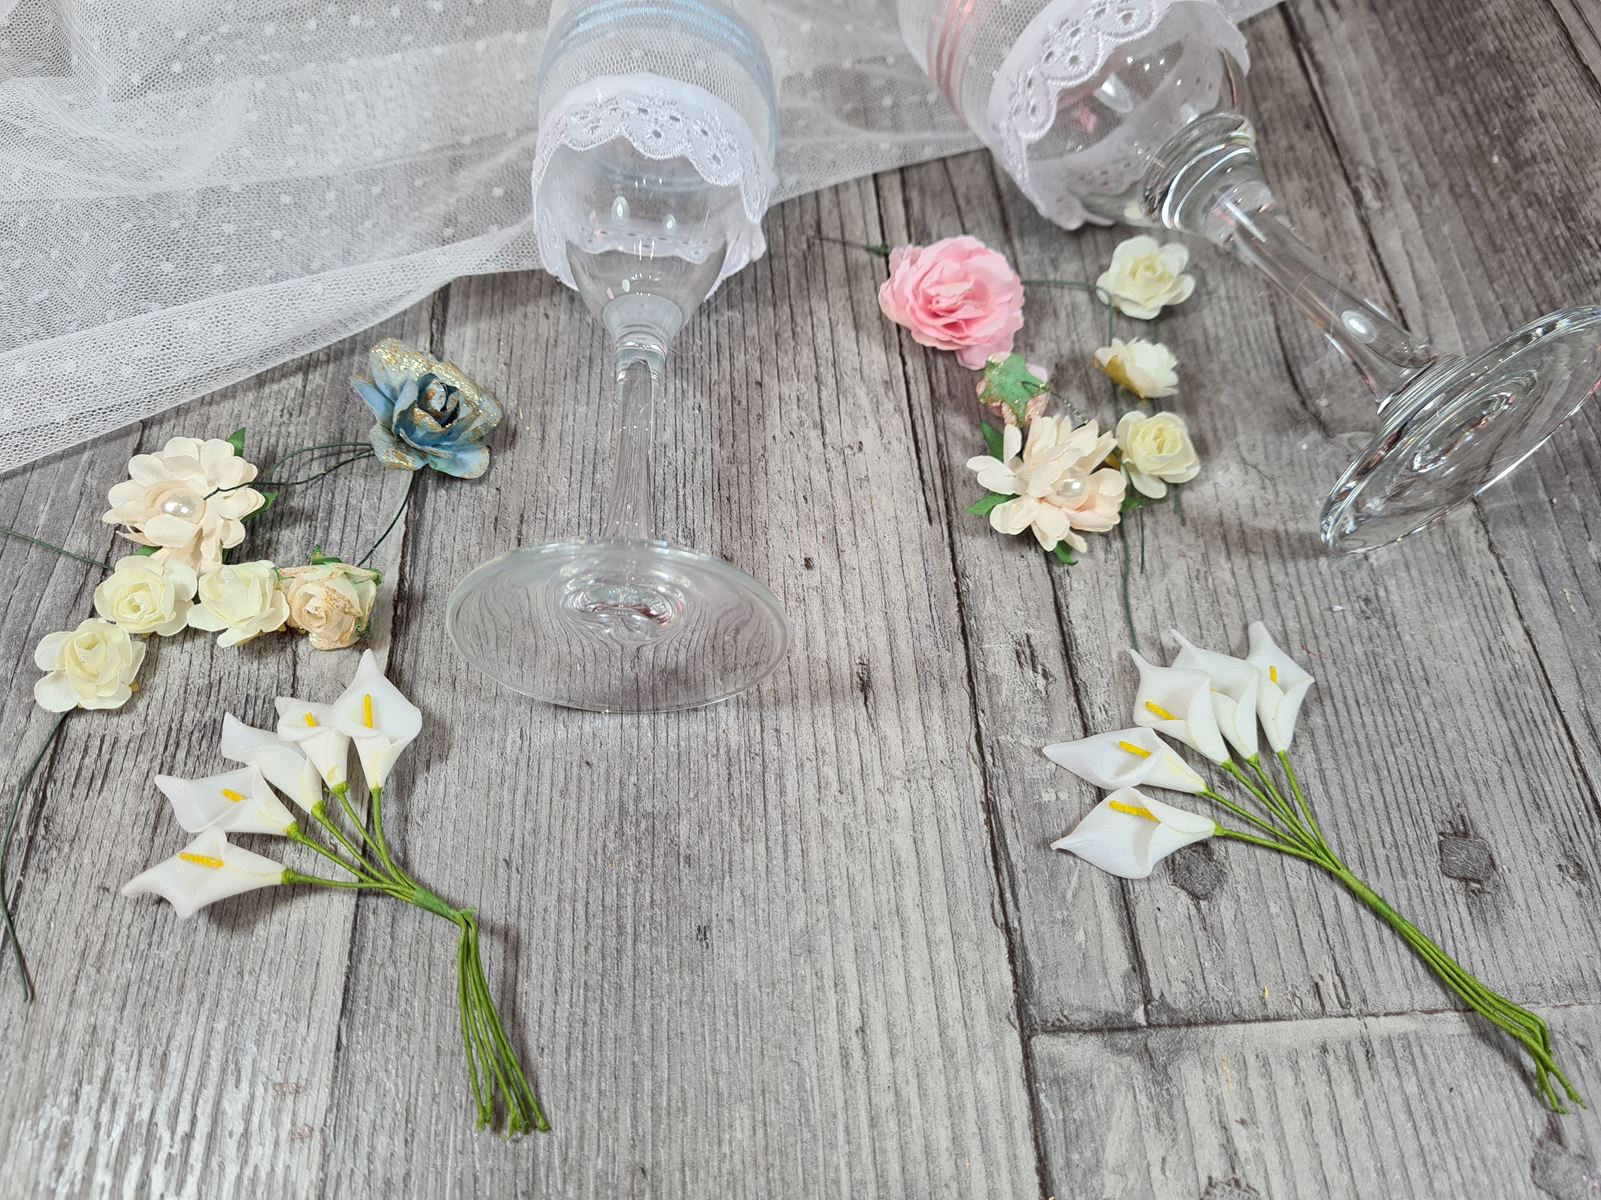 mariage-diy-decoration-art-de-la-table-petit-budget-faire-soi-même-coupe-champagne-fleurie